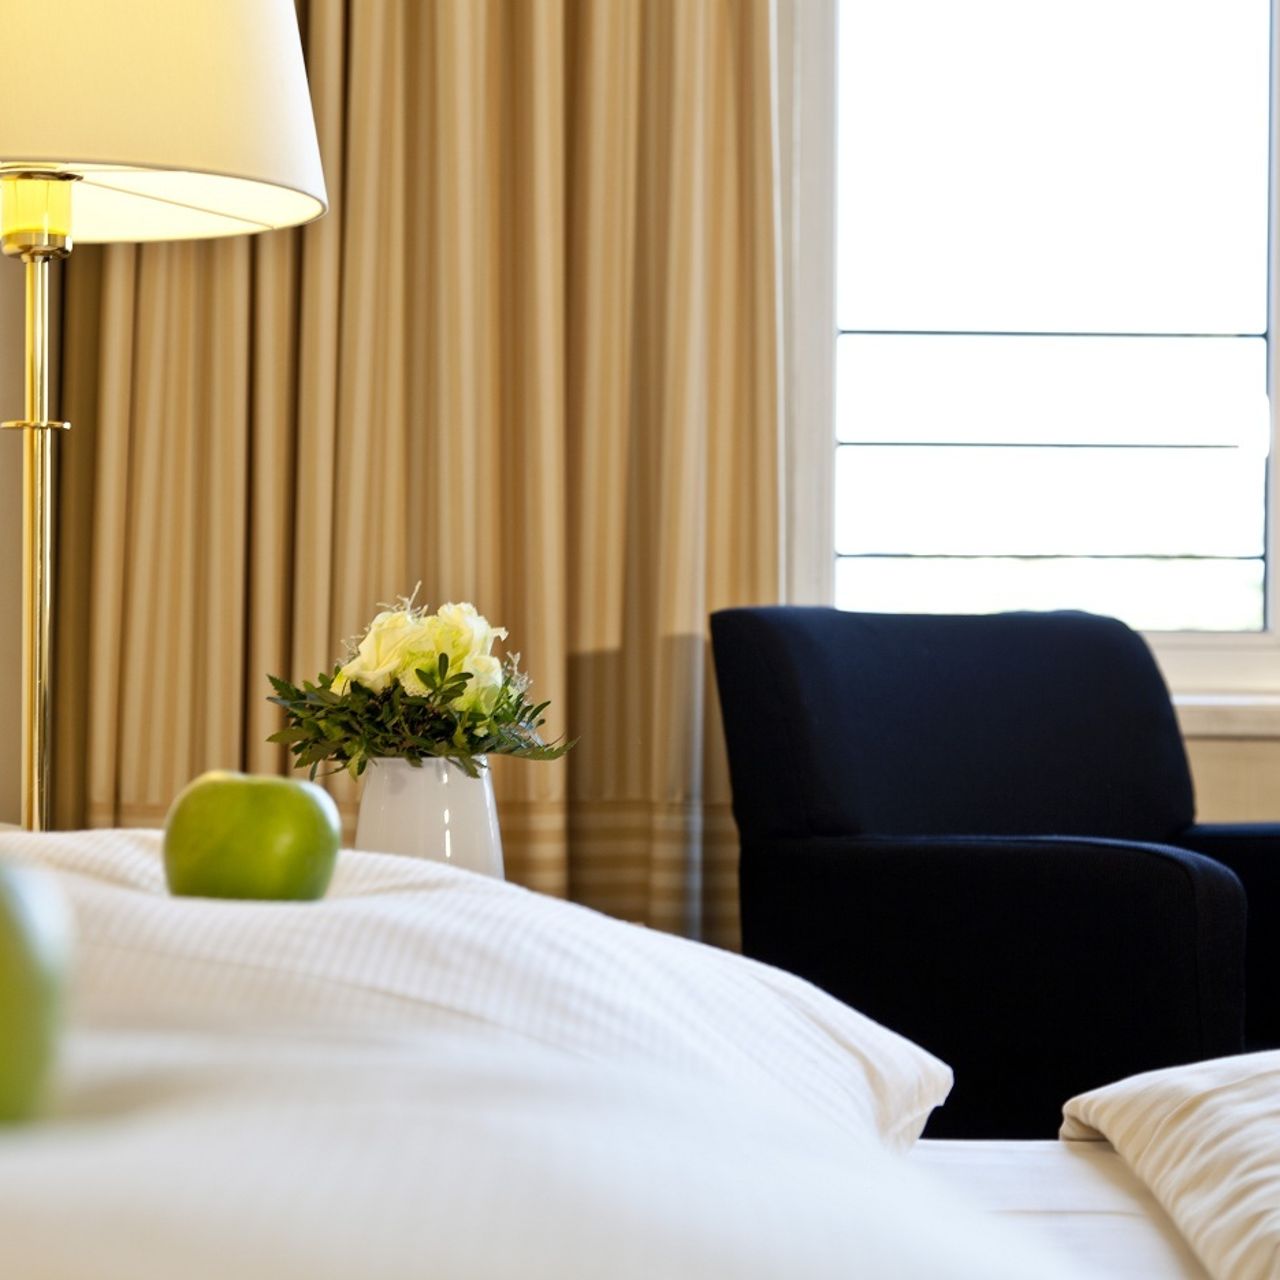 Hotel Relexa Stuttgarter Hof - Berlin - Great prices at HOTEL INFO